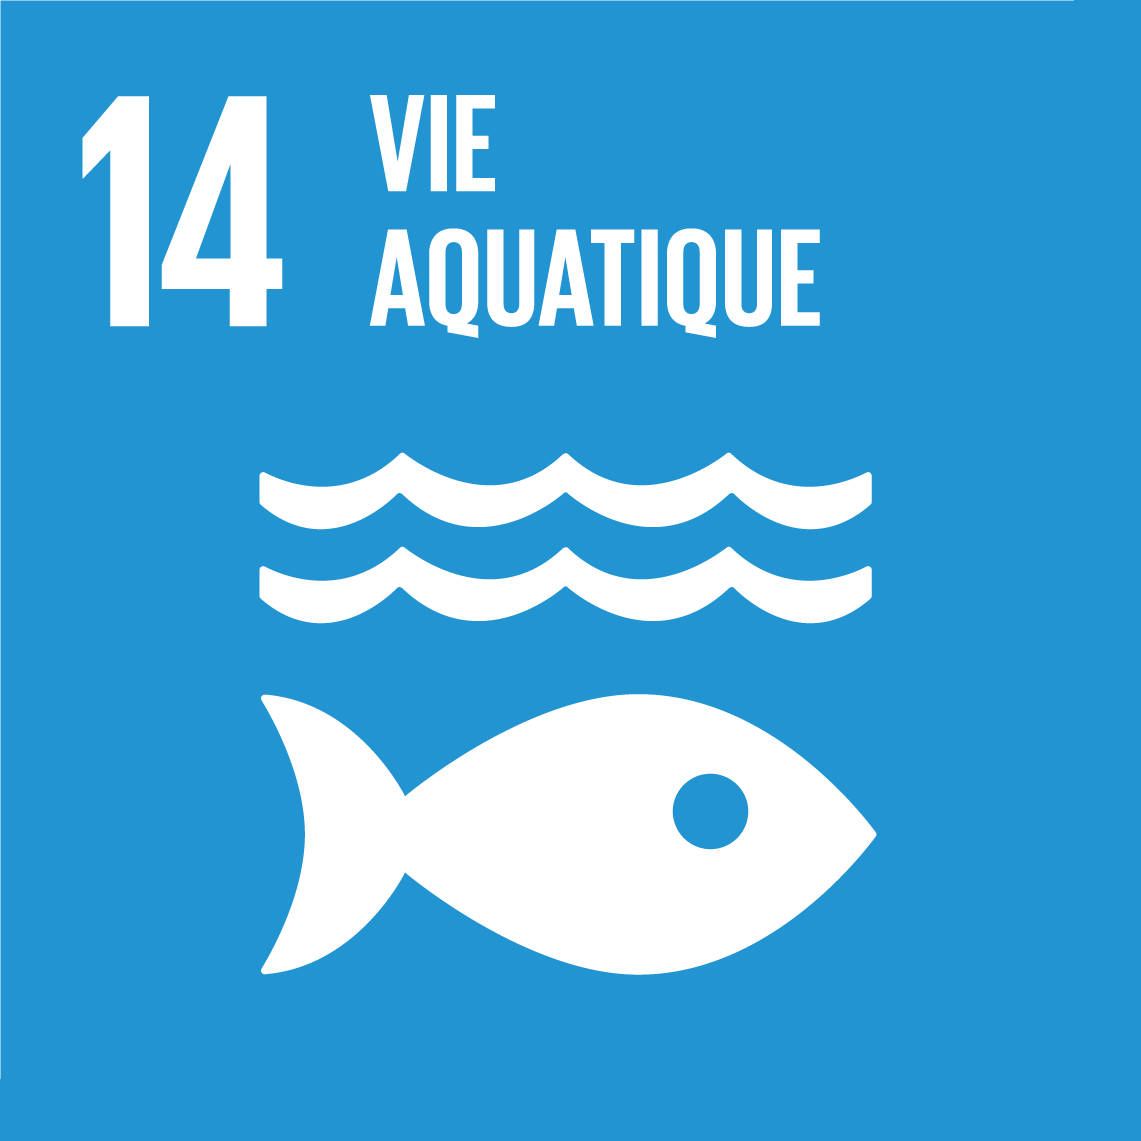 Objectifs de développement durable 14 - Vie aquatique